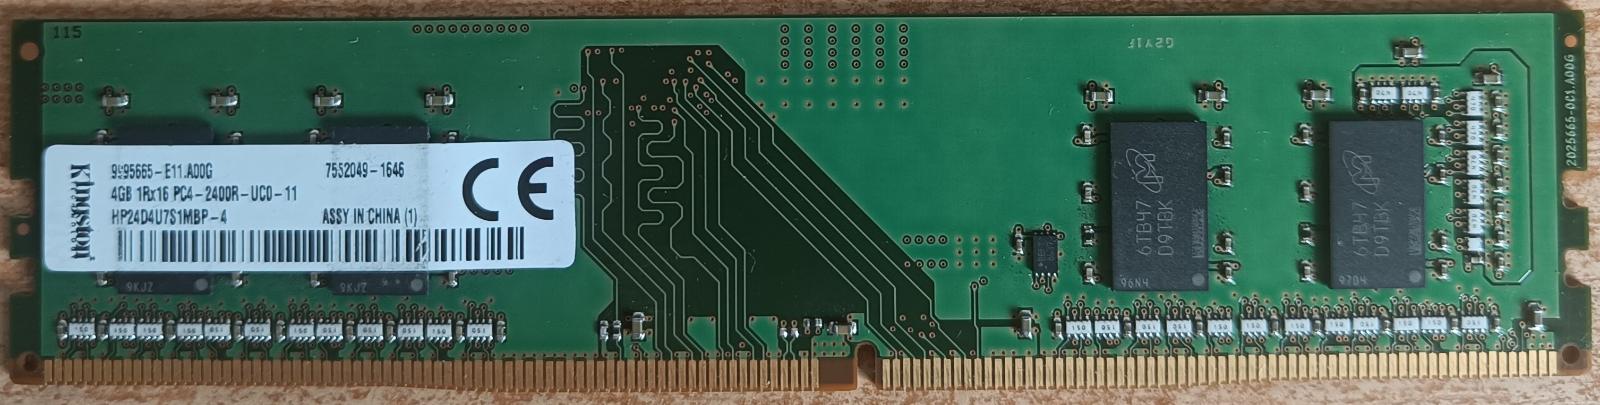 4GB RAM DDR4 pro PC zn. Kingston PC4-2400R-UC0-11, otestováno - Počítače a hry